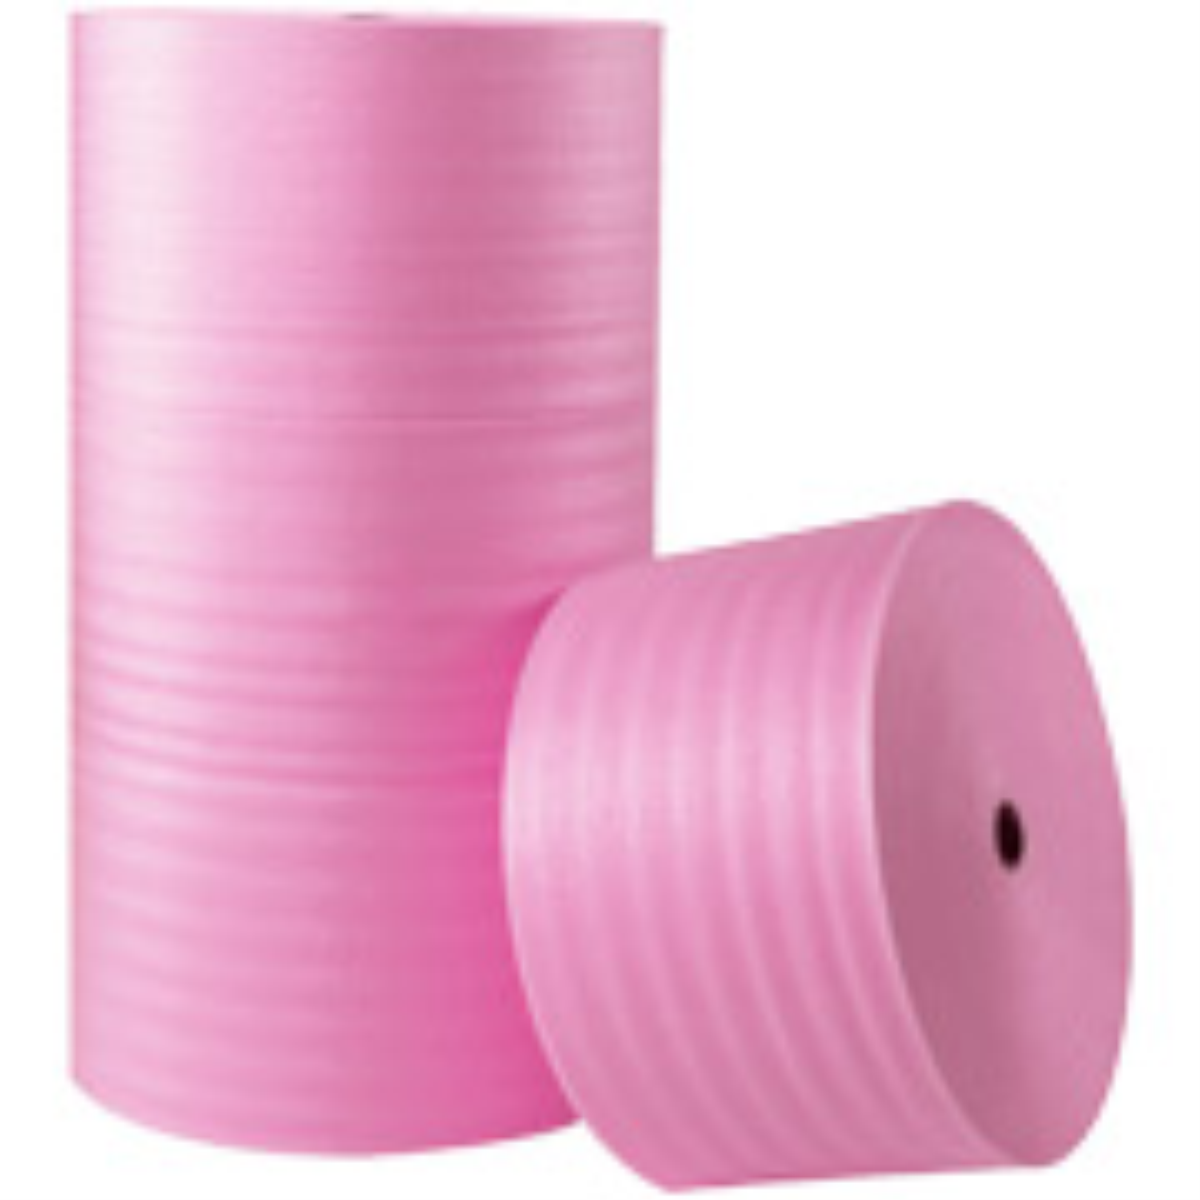 1/8″ x 72″ x 550′ Perforated Anti-Static Air Foam Roll 1 per Bundle